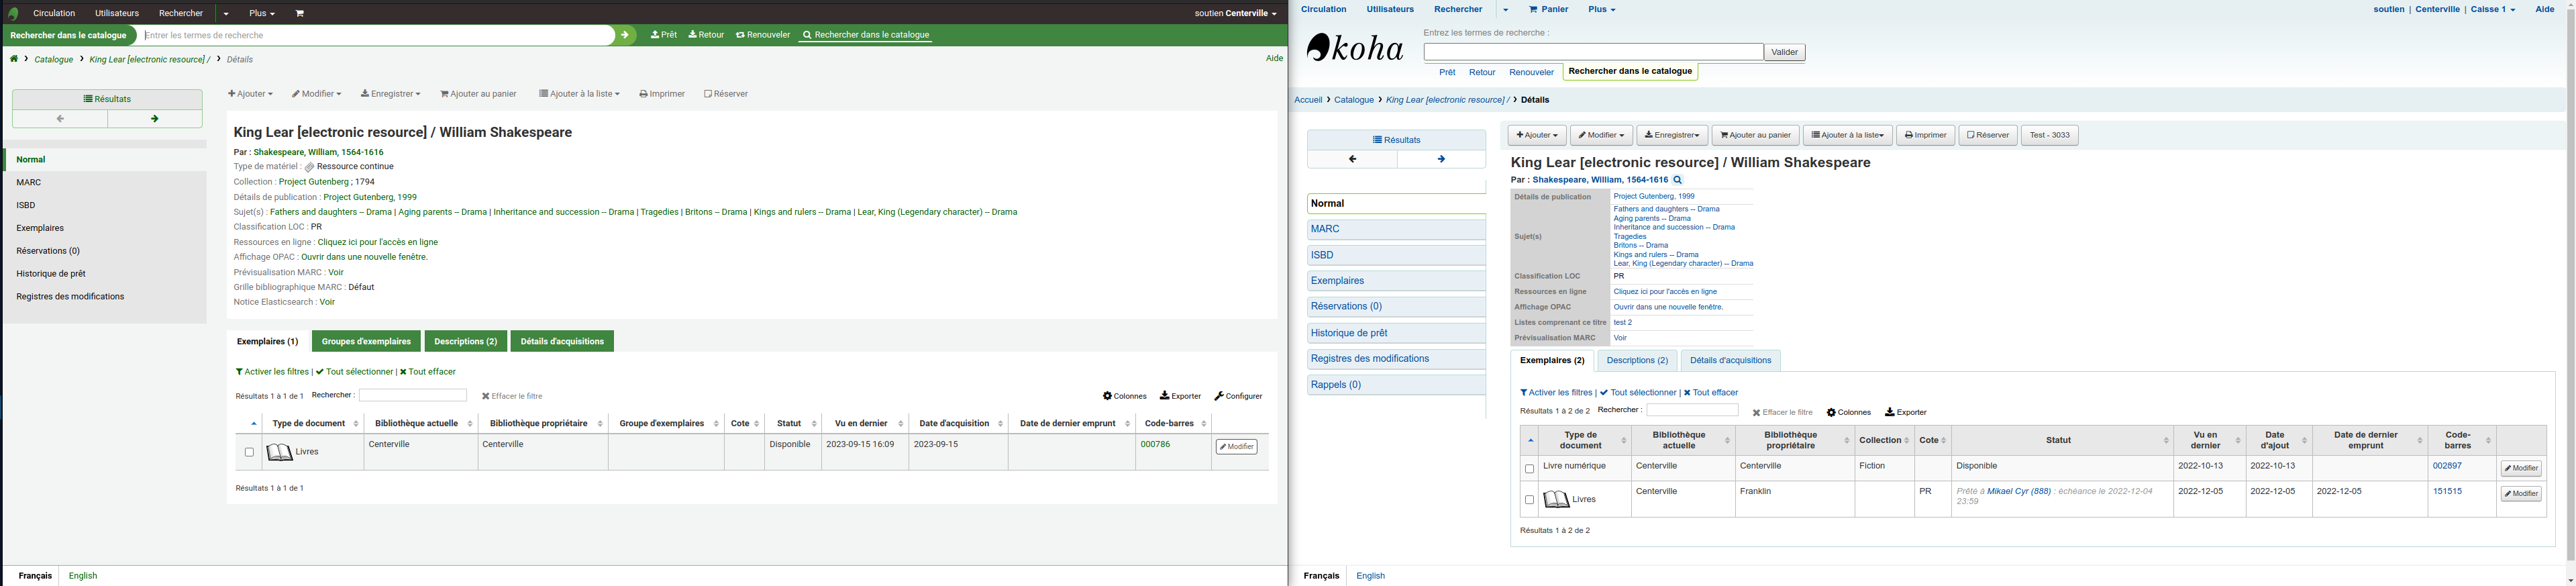 Comparaison de l'affichage d'une notice détaillée dans l'interface professionnelle de Koha, 23.05 est à gauche, 22.05 est à droite